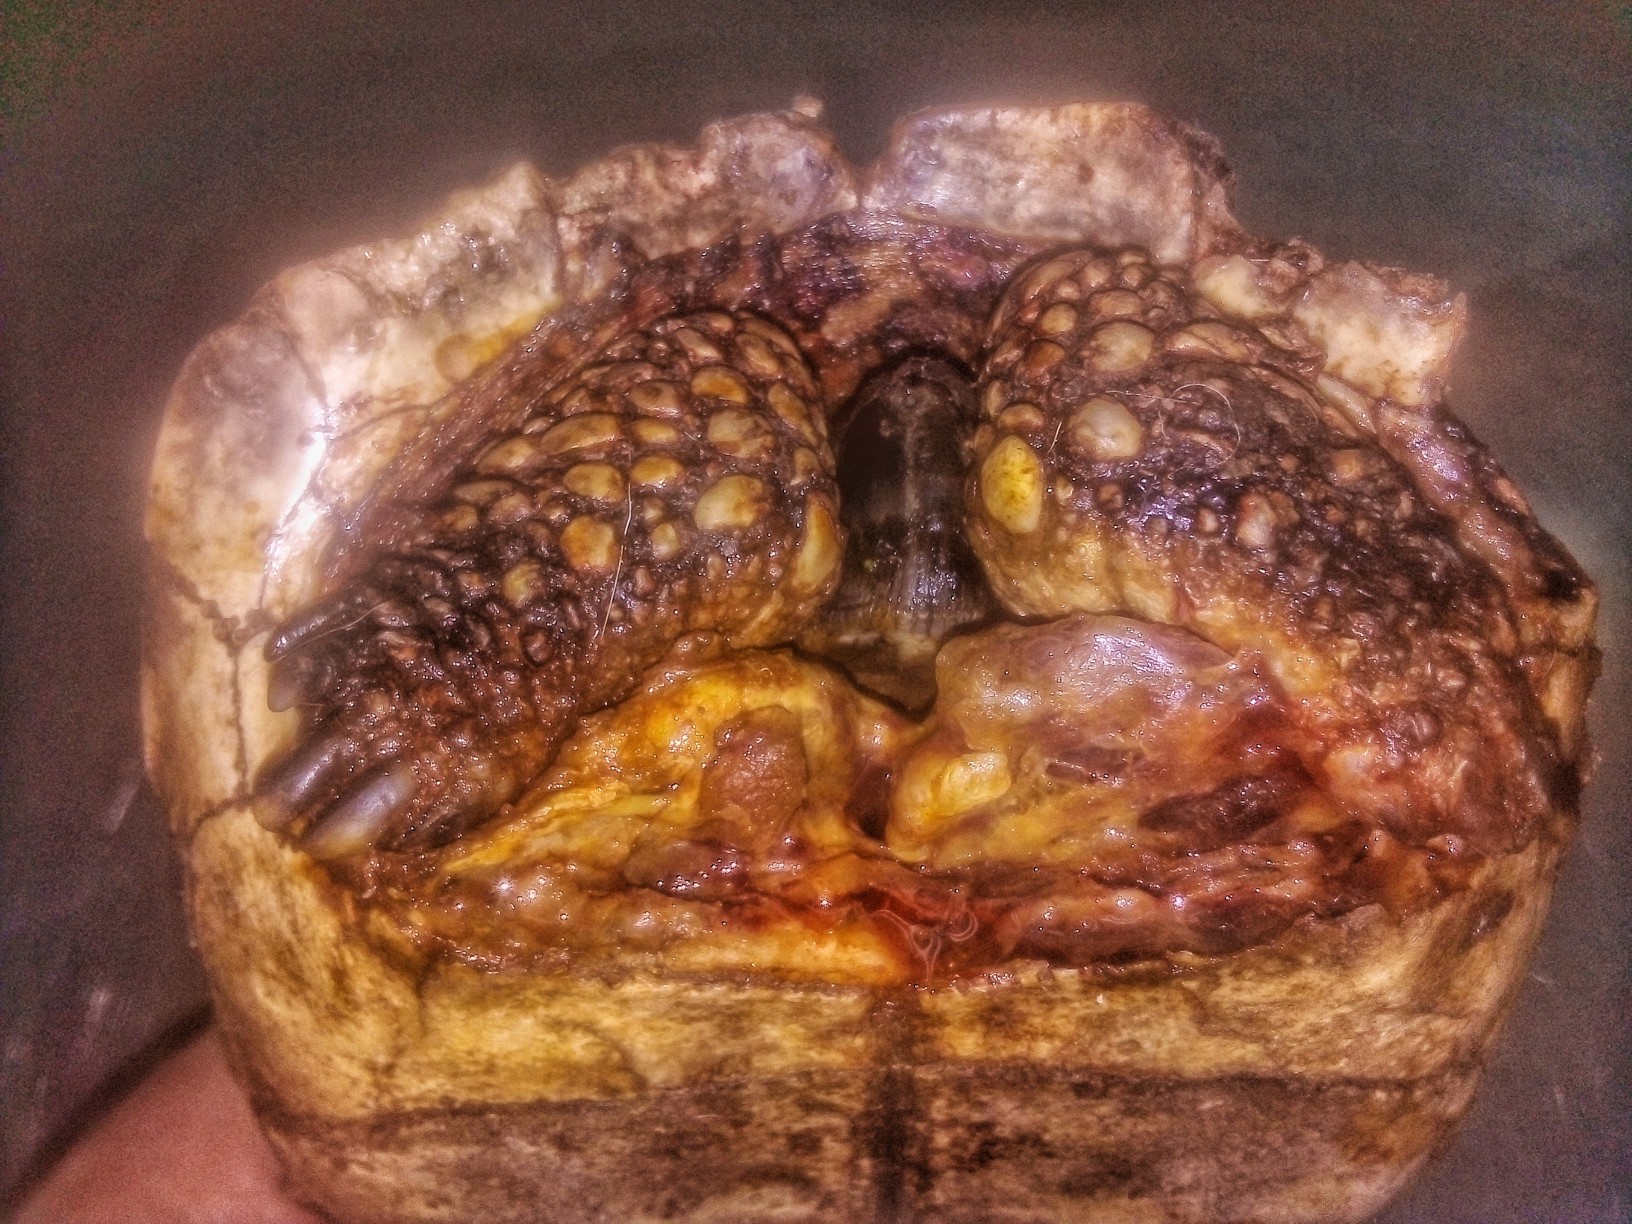 Lesión que evidencia la fractura del segmento frontal del plastrón con exposición muscular, en una tortuga argentina (Chelonoidis chilensis) mordida por un canino